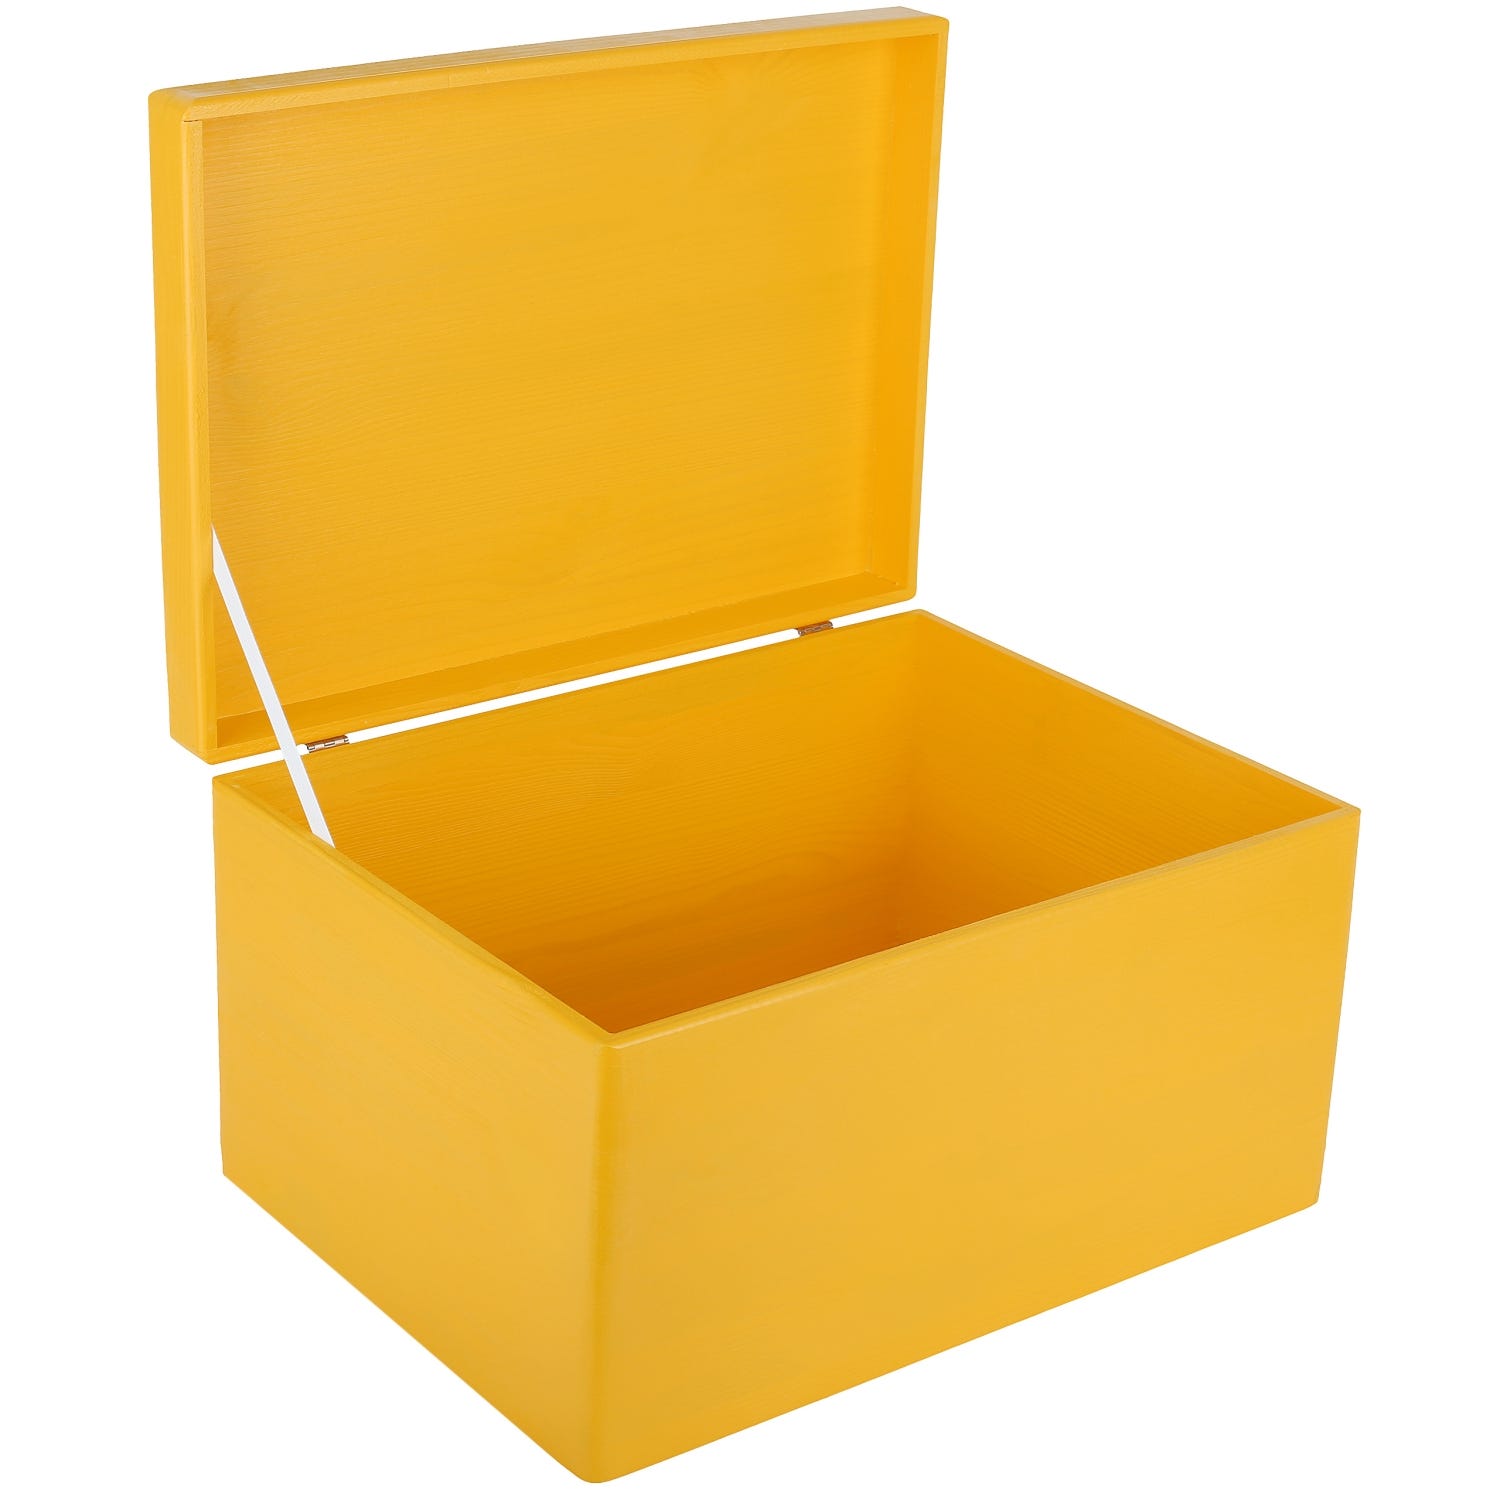  GYMEIJYG Caja de almacenamiento vintage, baúl del tesoro de  madera hecha a mano, caja decorativa de cartón para decoración del hogar  (color: amarillo, tamaño: 16.5 x 10.6 x 6.3 in) 